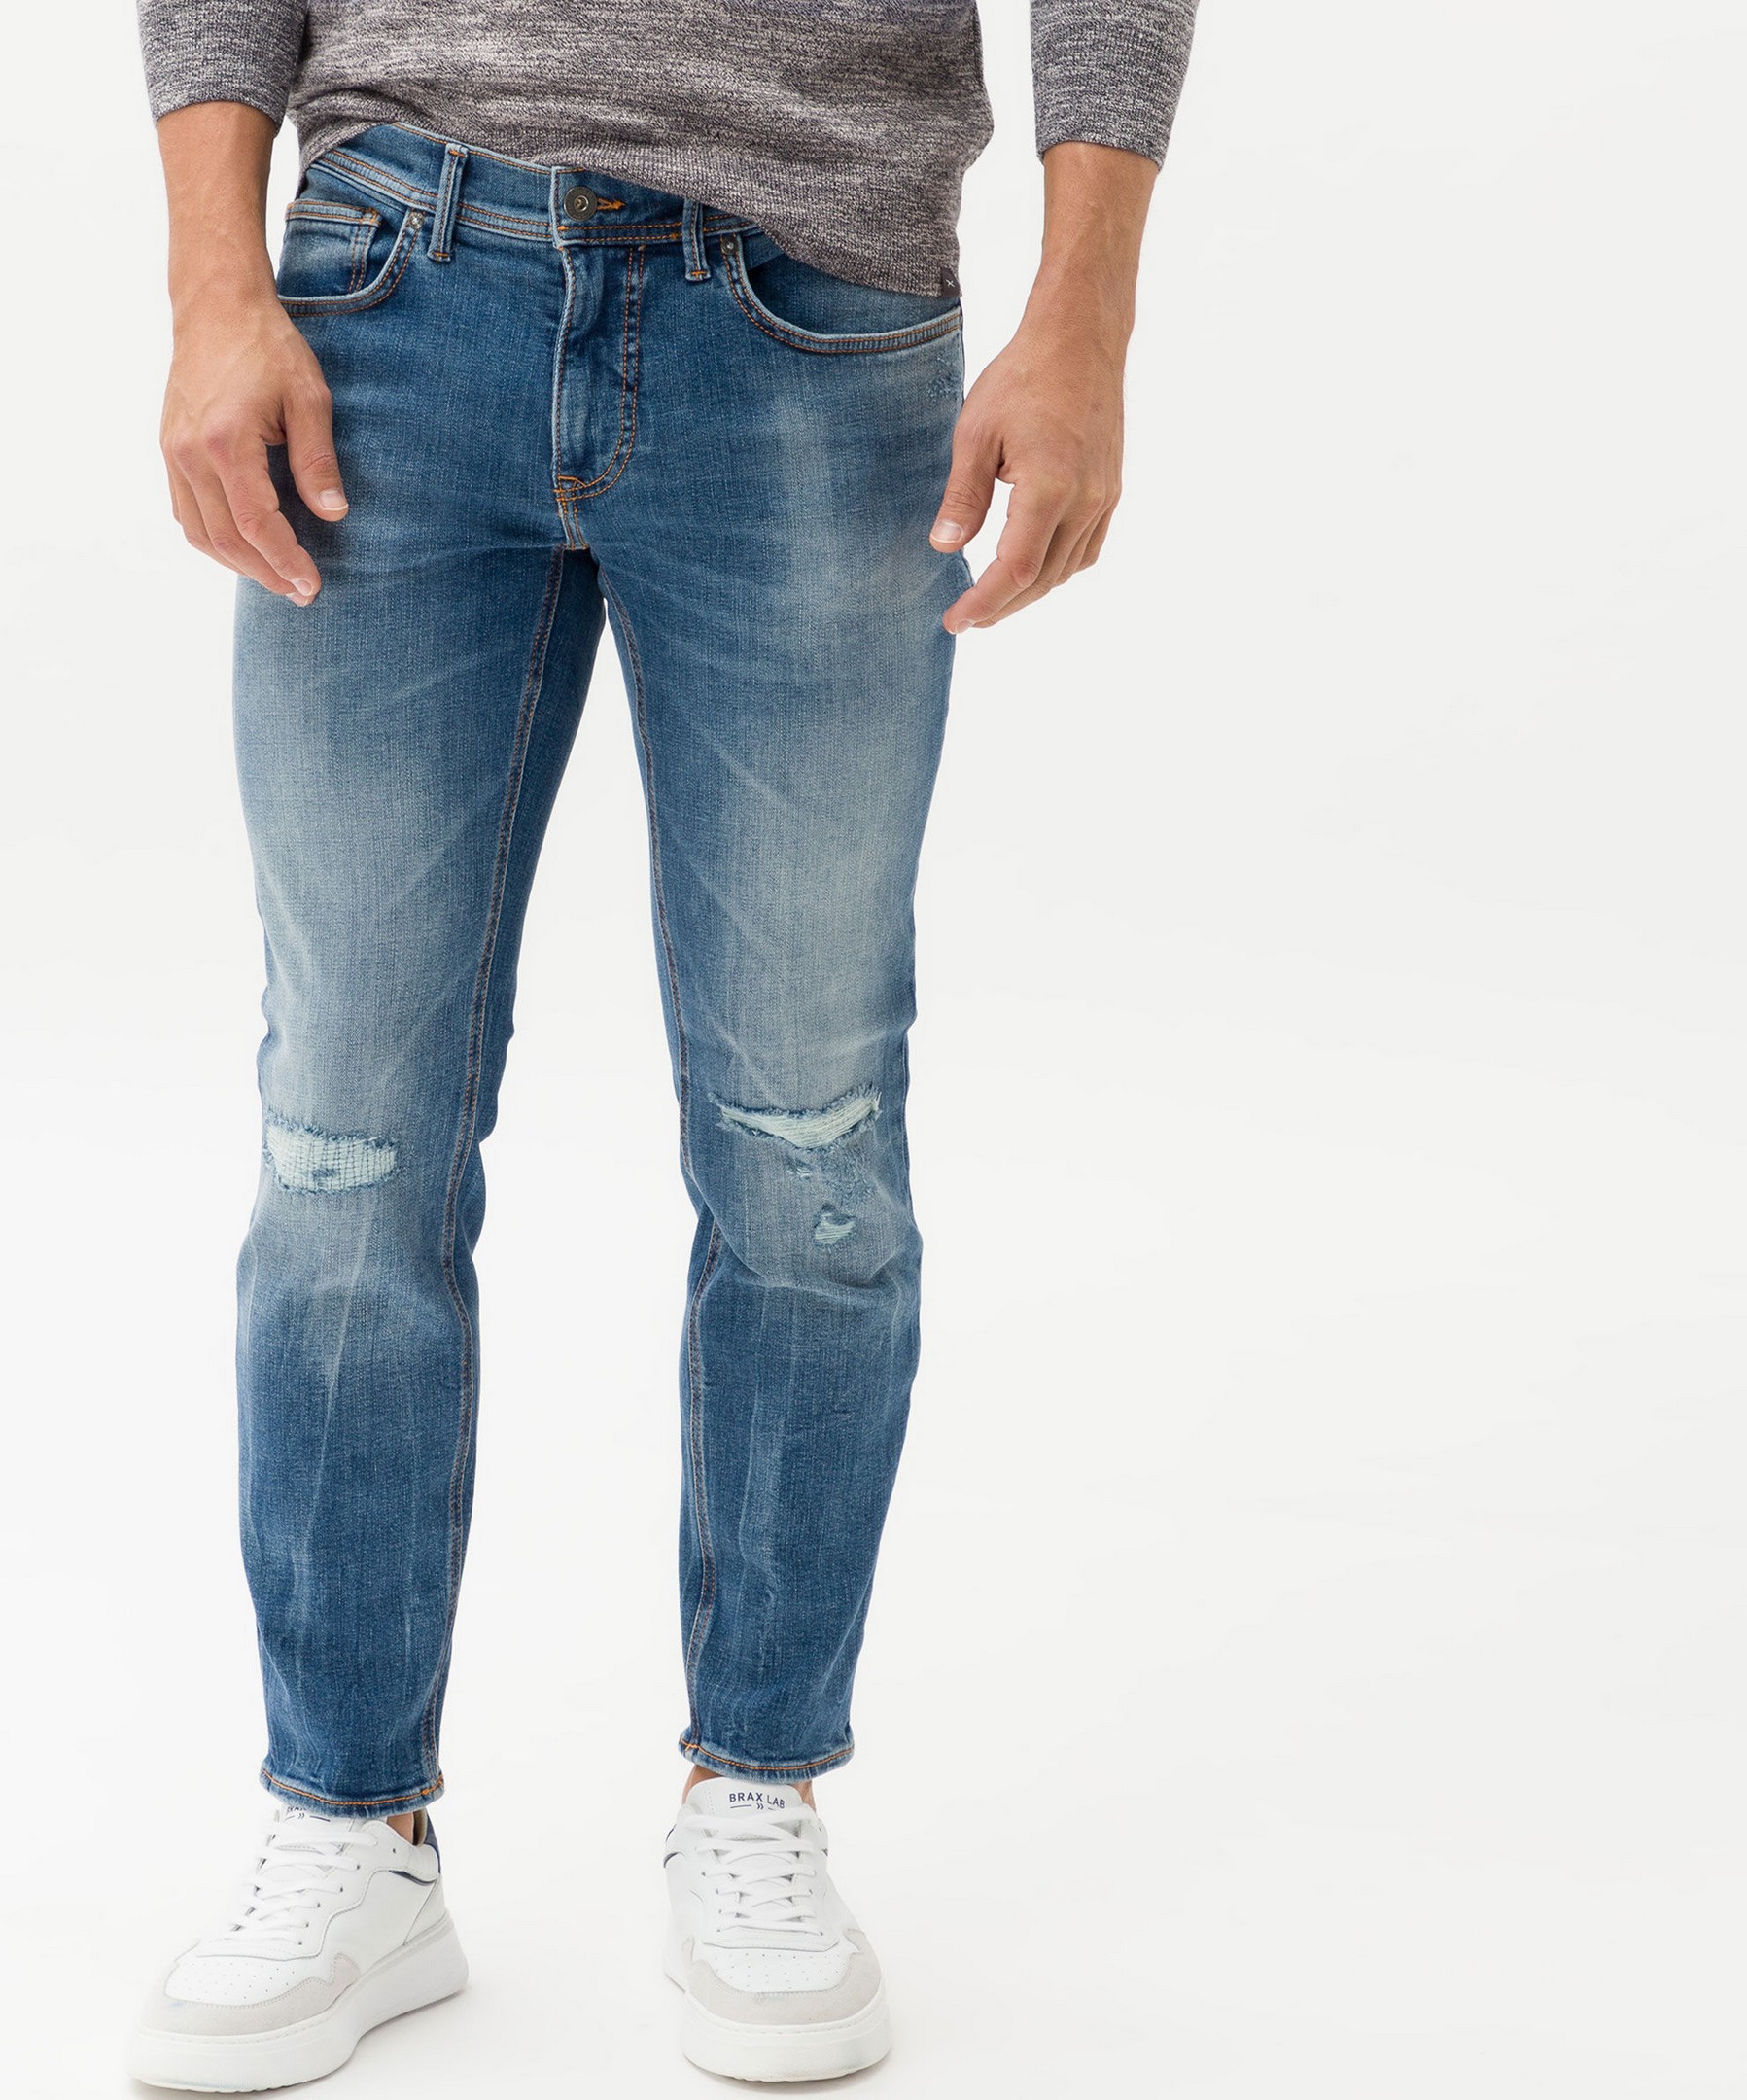 Brax Chris 5-Pocket Vintage Denim Hi-Flex Superstretch Blue Planet Jeans  Blue Indigo Destroyed | Jan Rozing Men's Fashion